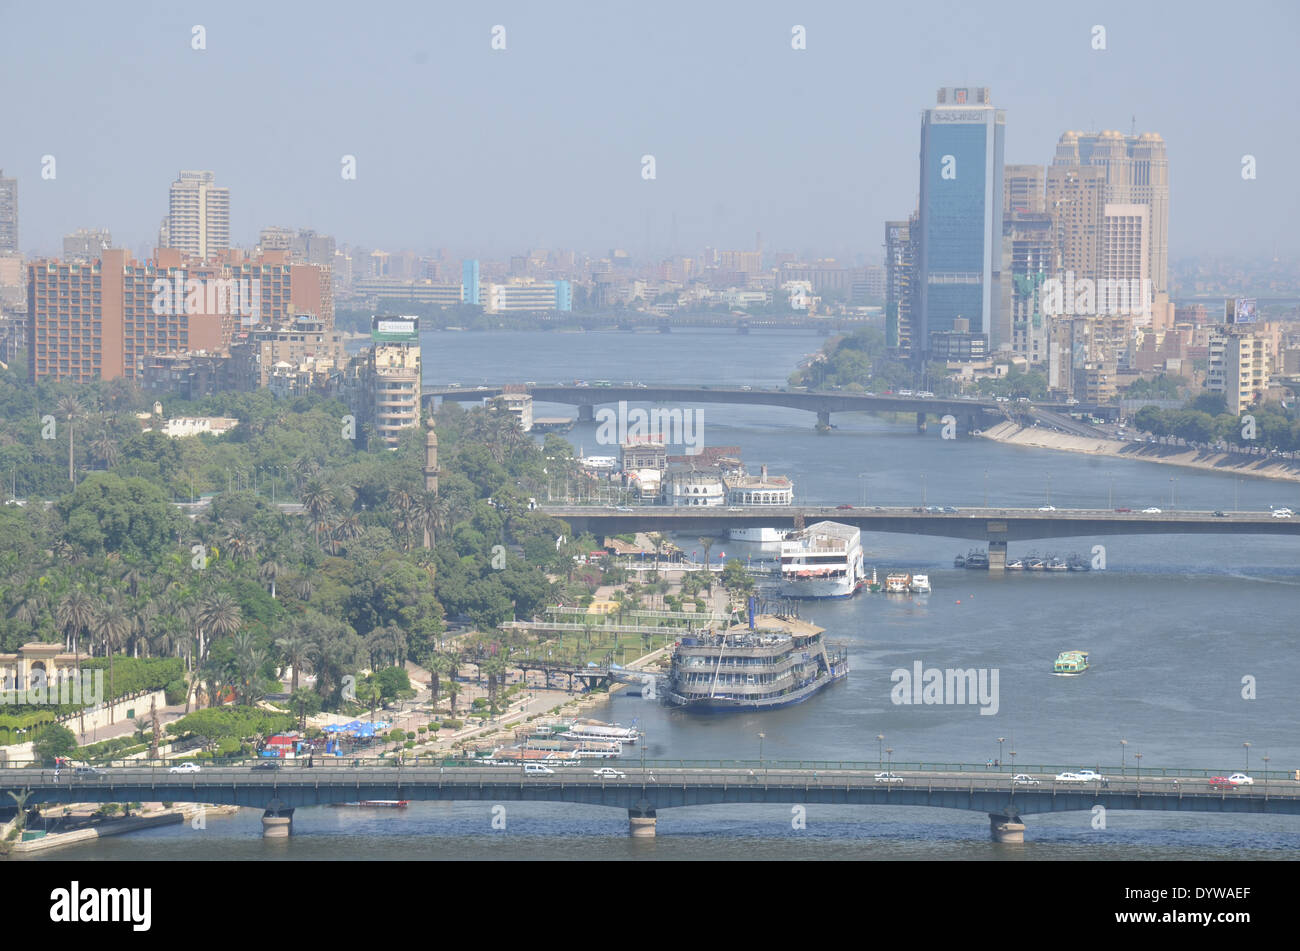 Il fiume Nilo che scorre attraverso il centro de Il Cairo andando verso nord. Fotografie di Barry Iverson Foto Stock